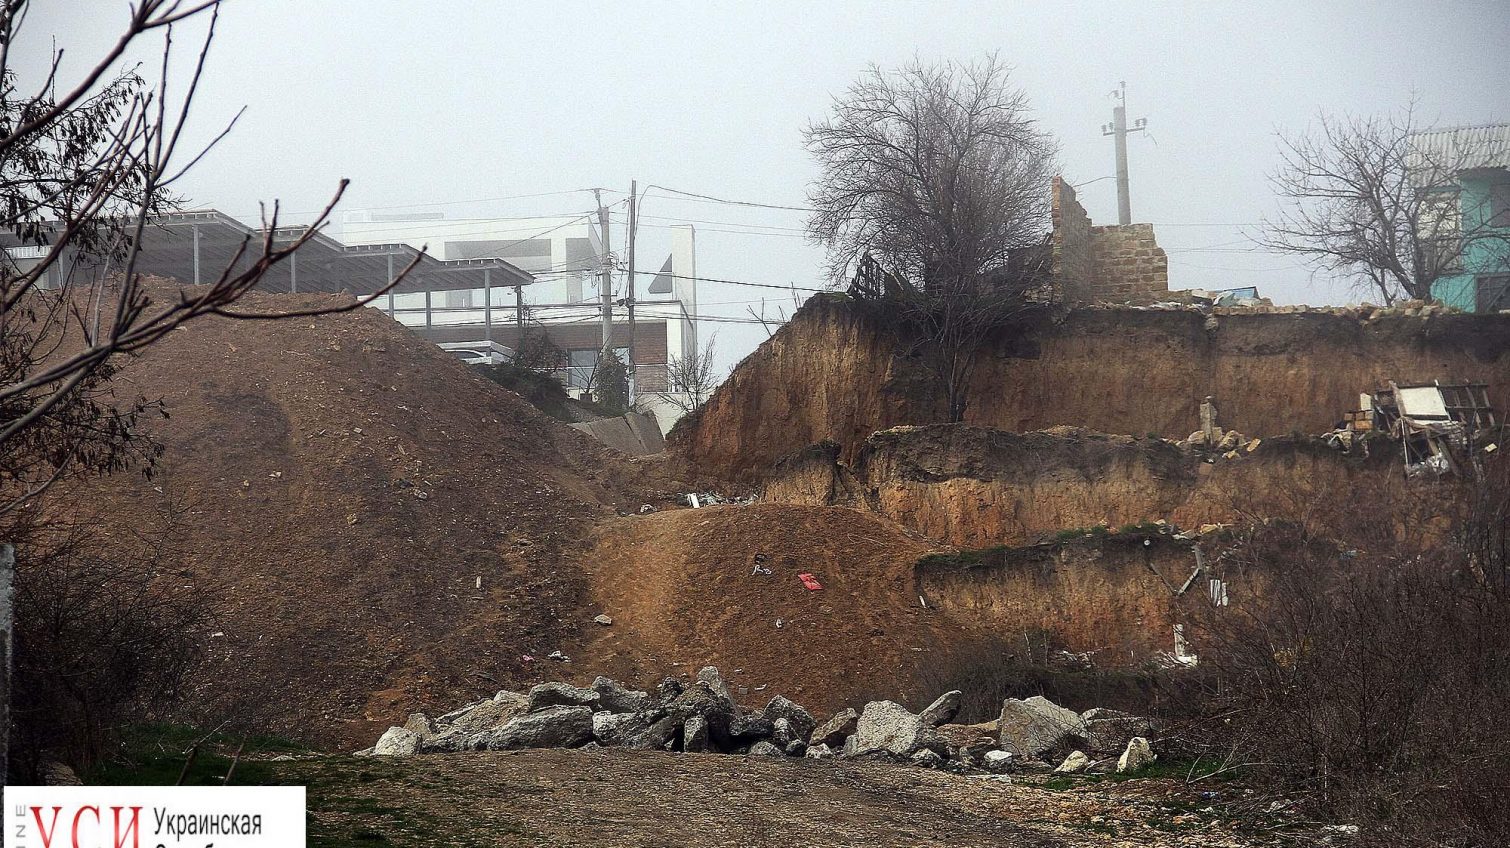 Оползни в Черноморске: за зиму курени сползли в море, на пляже строят бетонные укрепления (фоторепортаж) «фото»